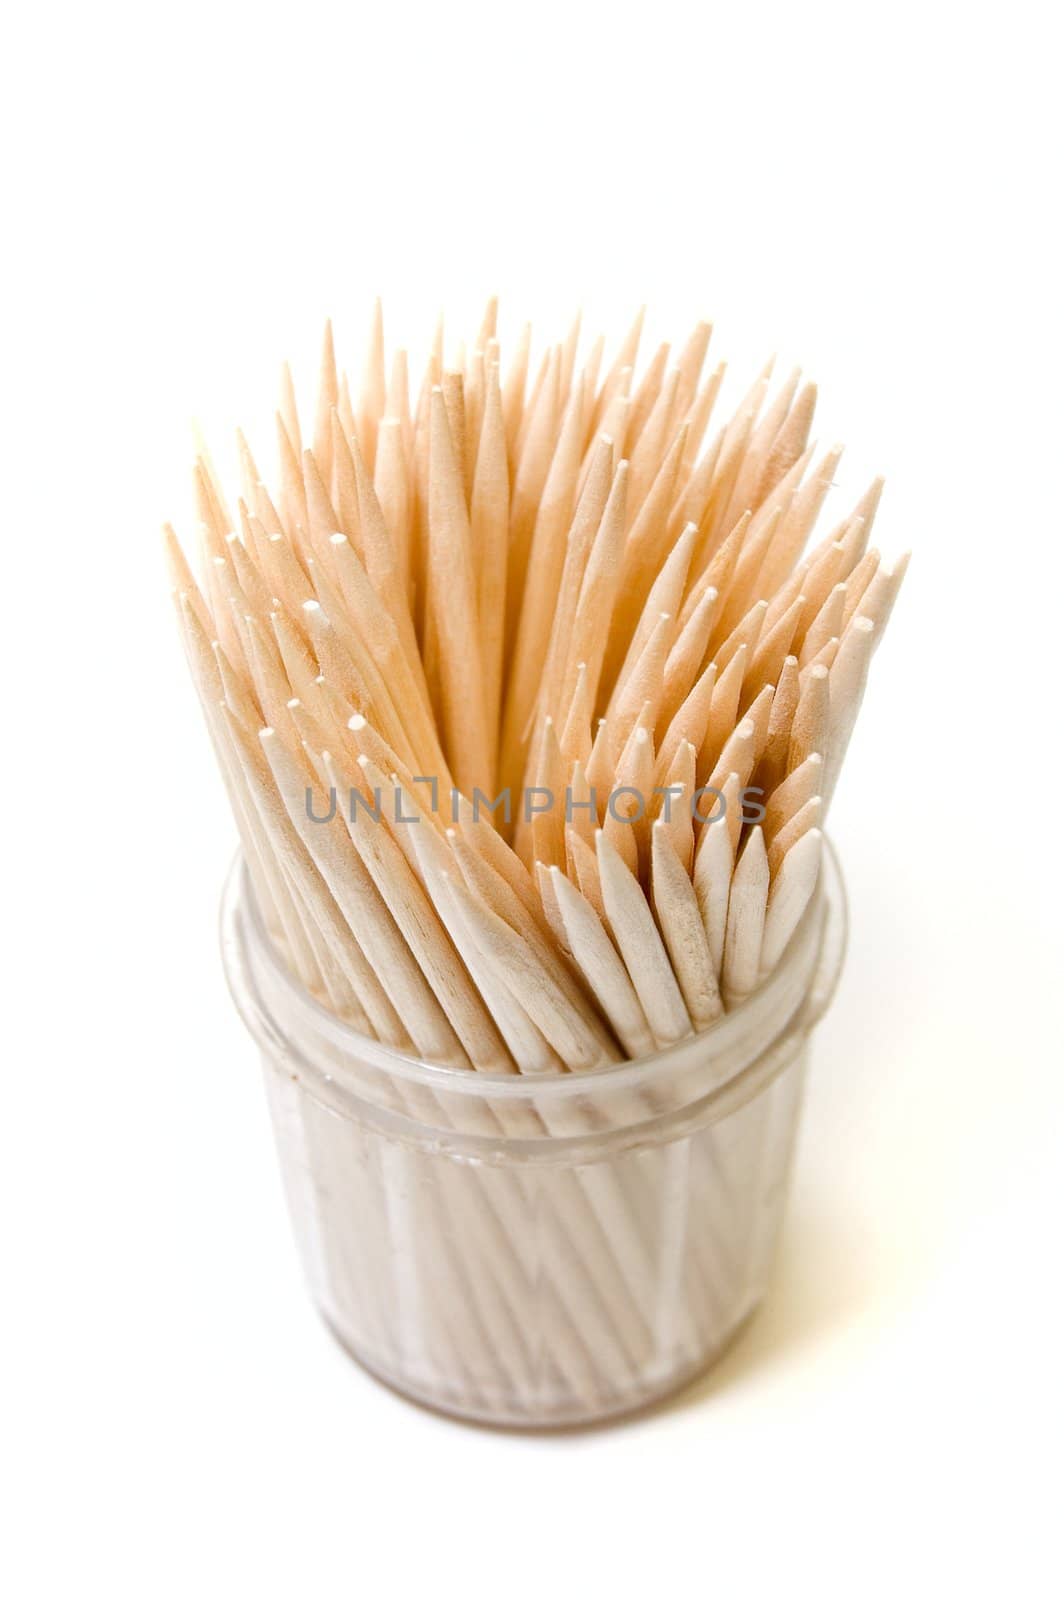 Many toothpicks on white backround